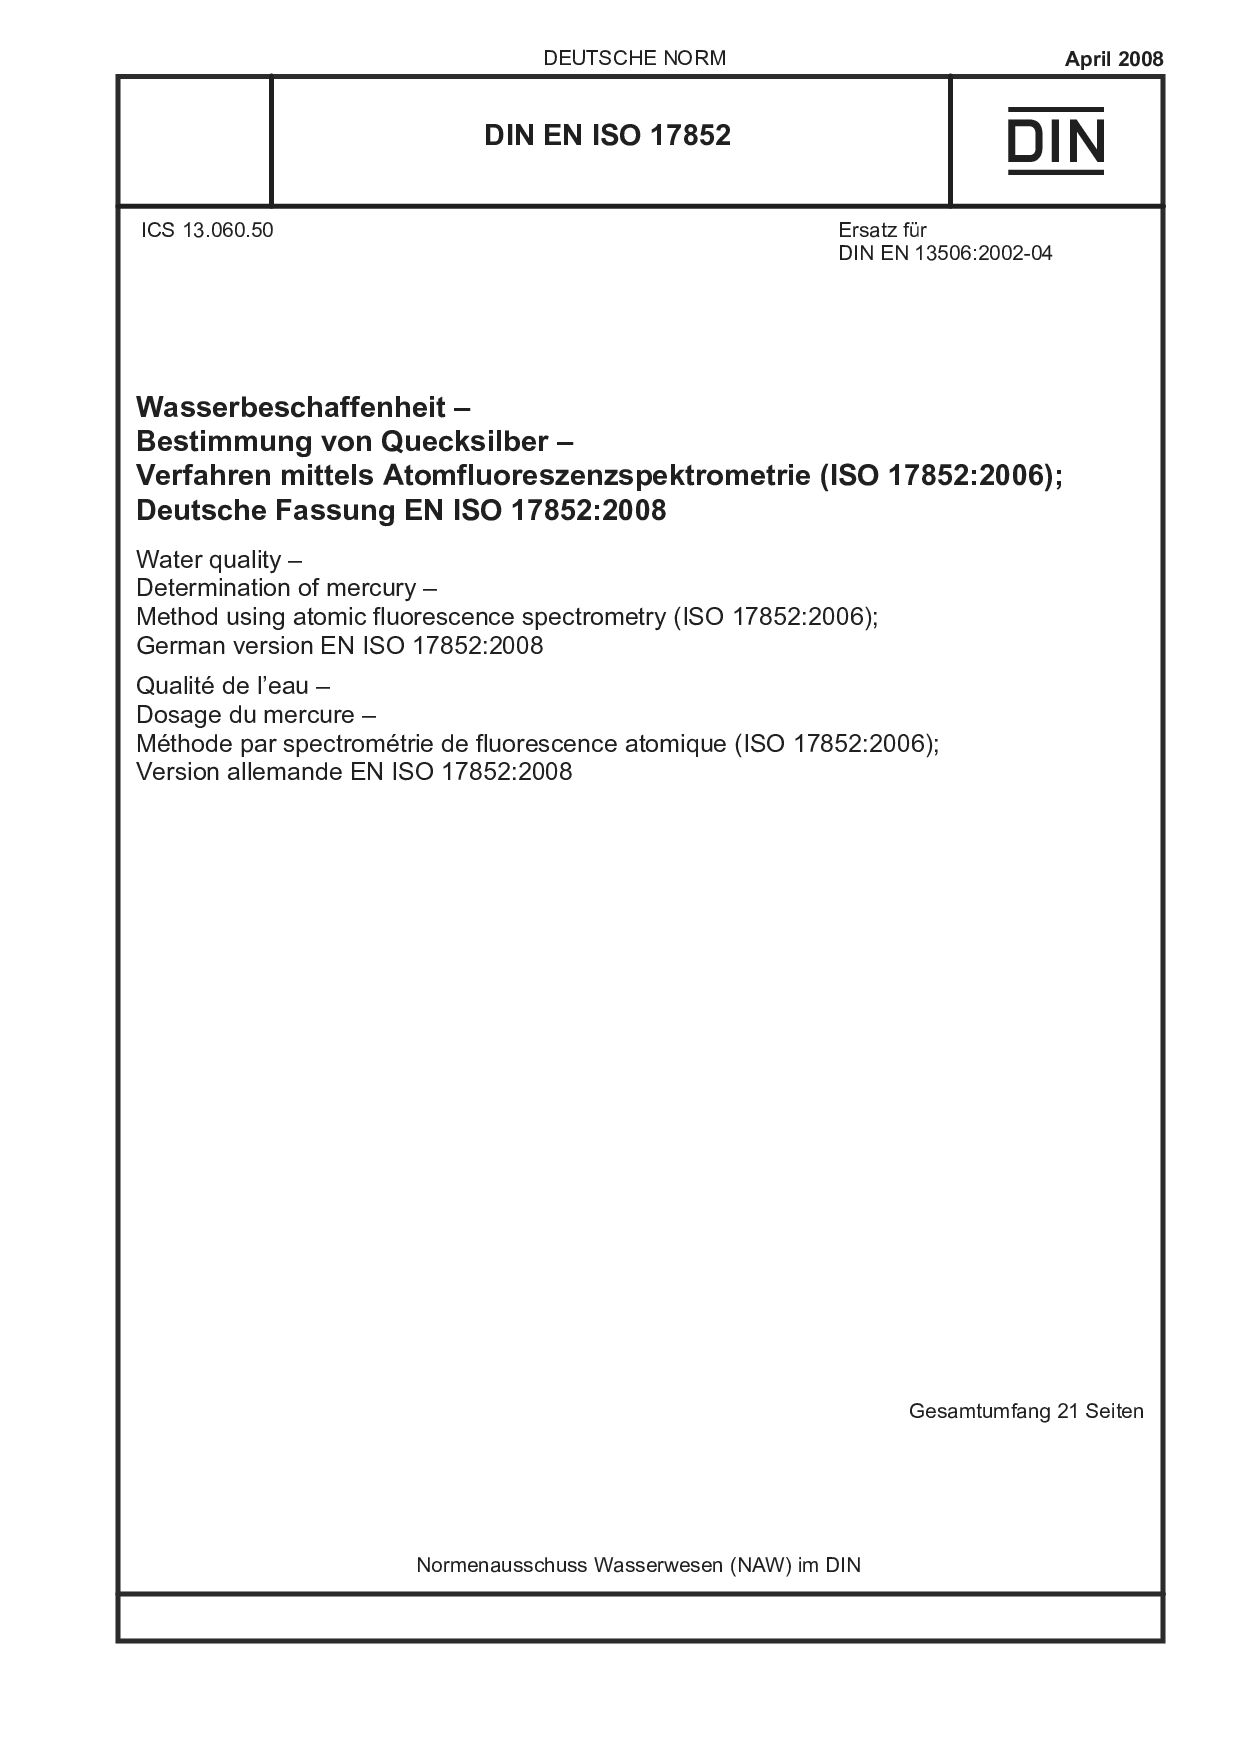 DIN EN ISO 17852:2008封面图